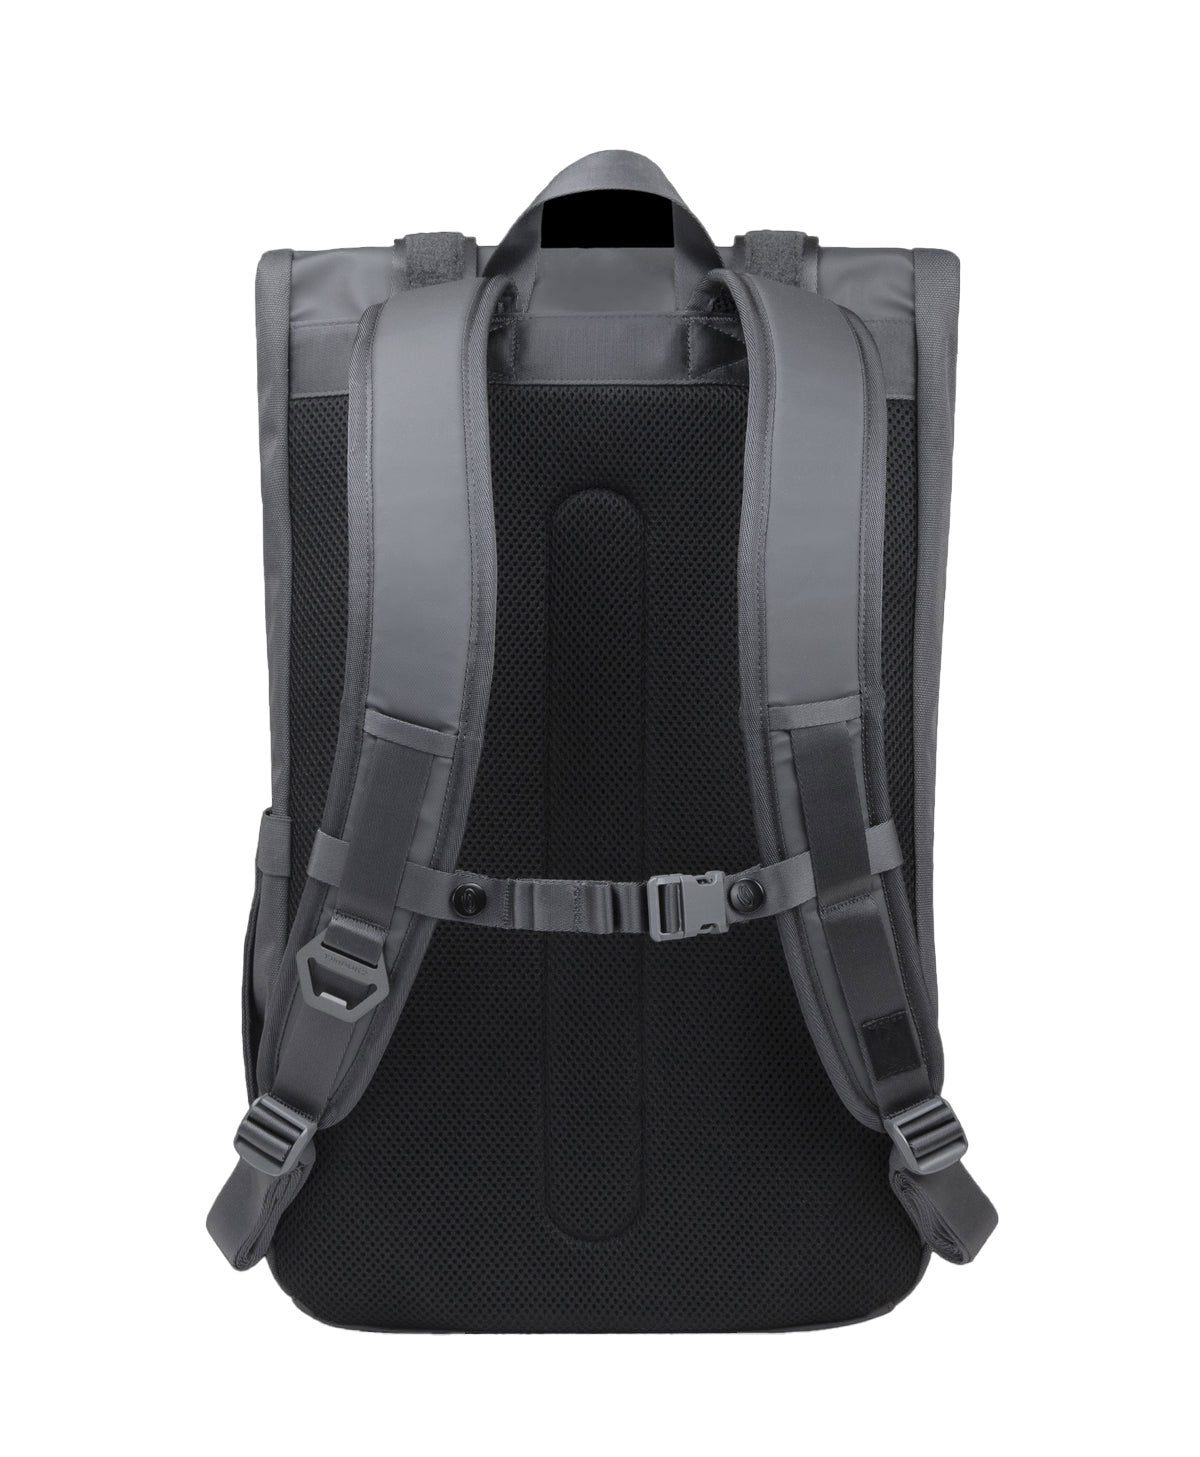 Timbuk2 Rogue Custom Laptop Backpacks, Steel